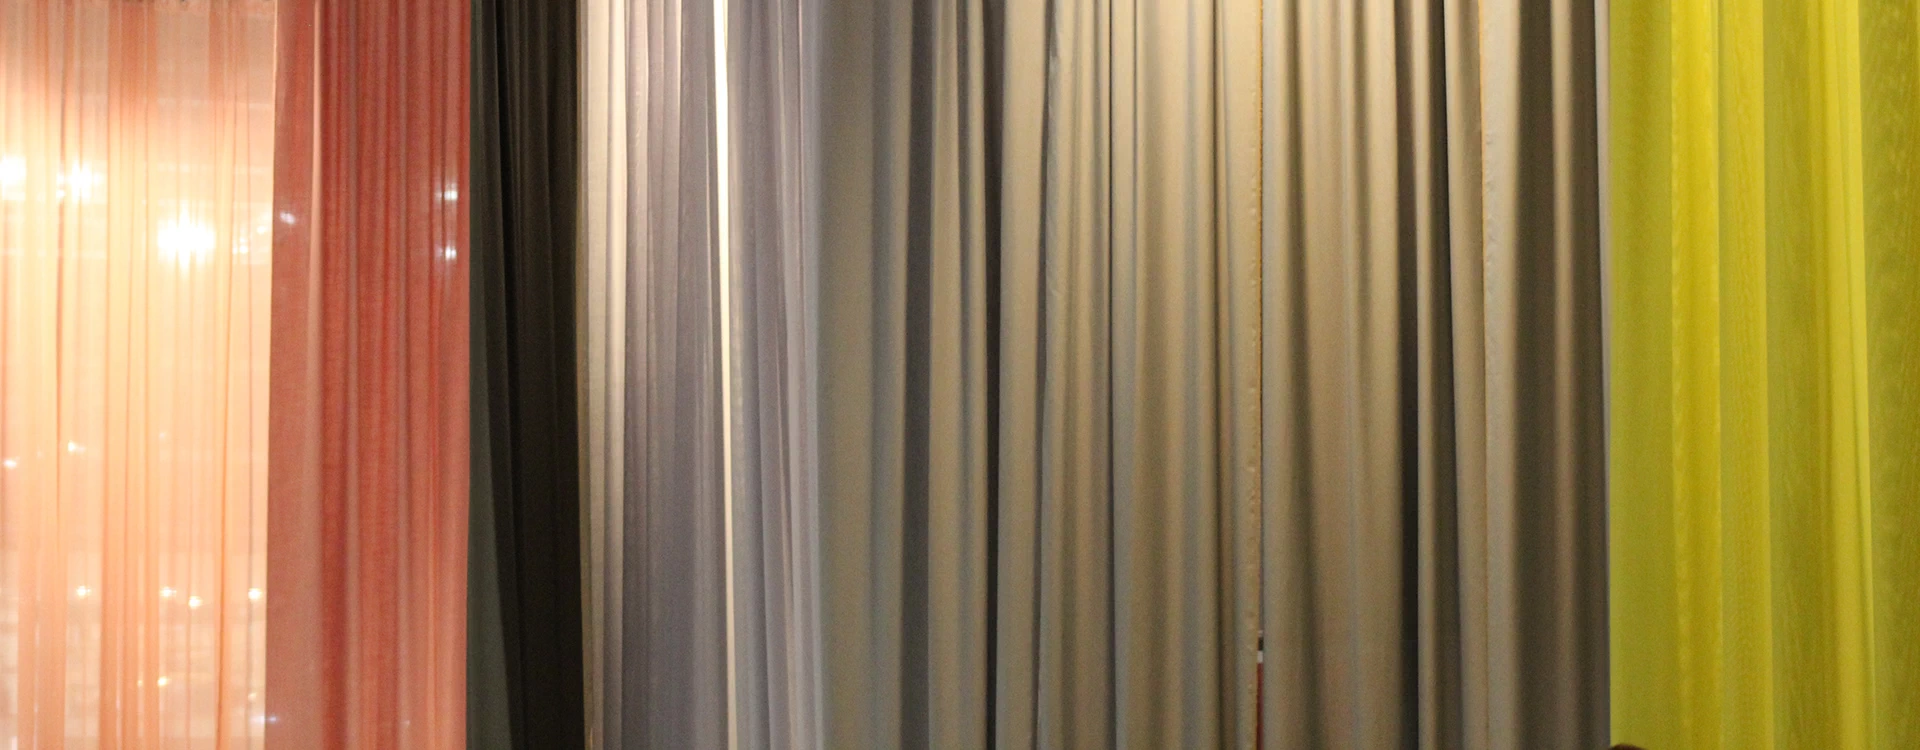 La scelta dei colori per le tende da interno - Tendart Torino